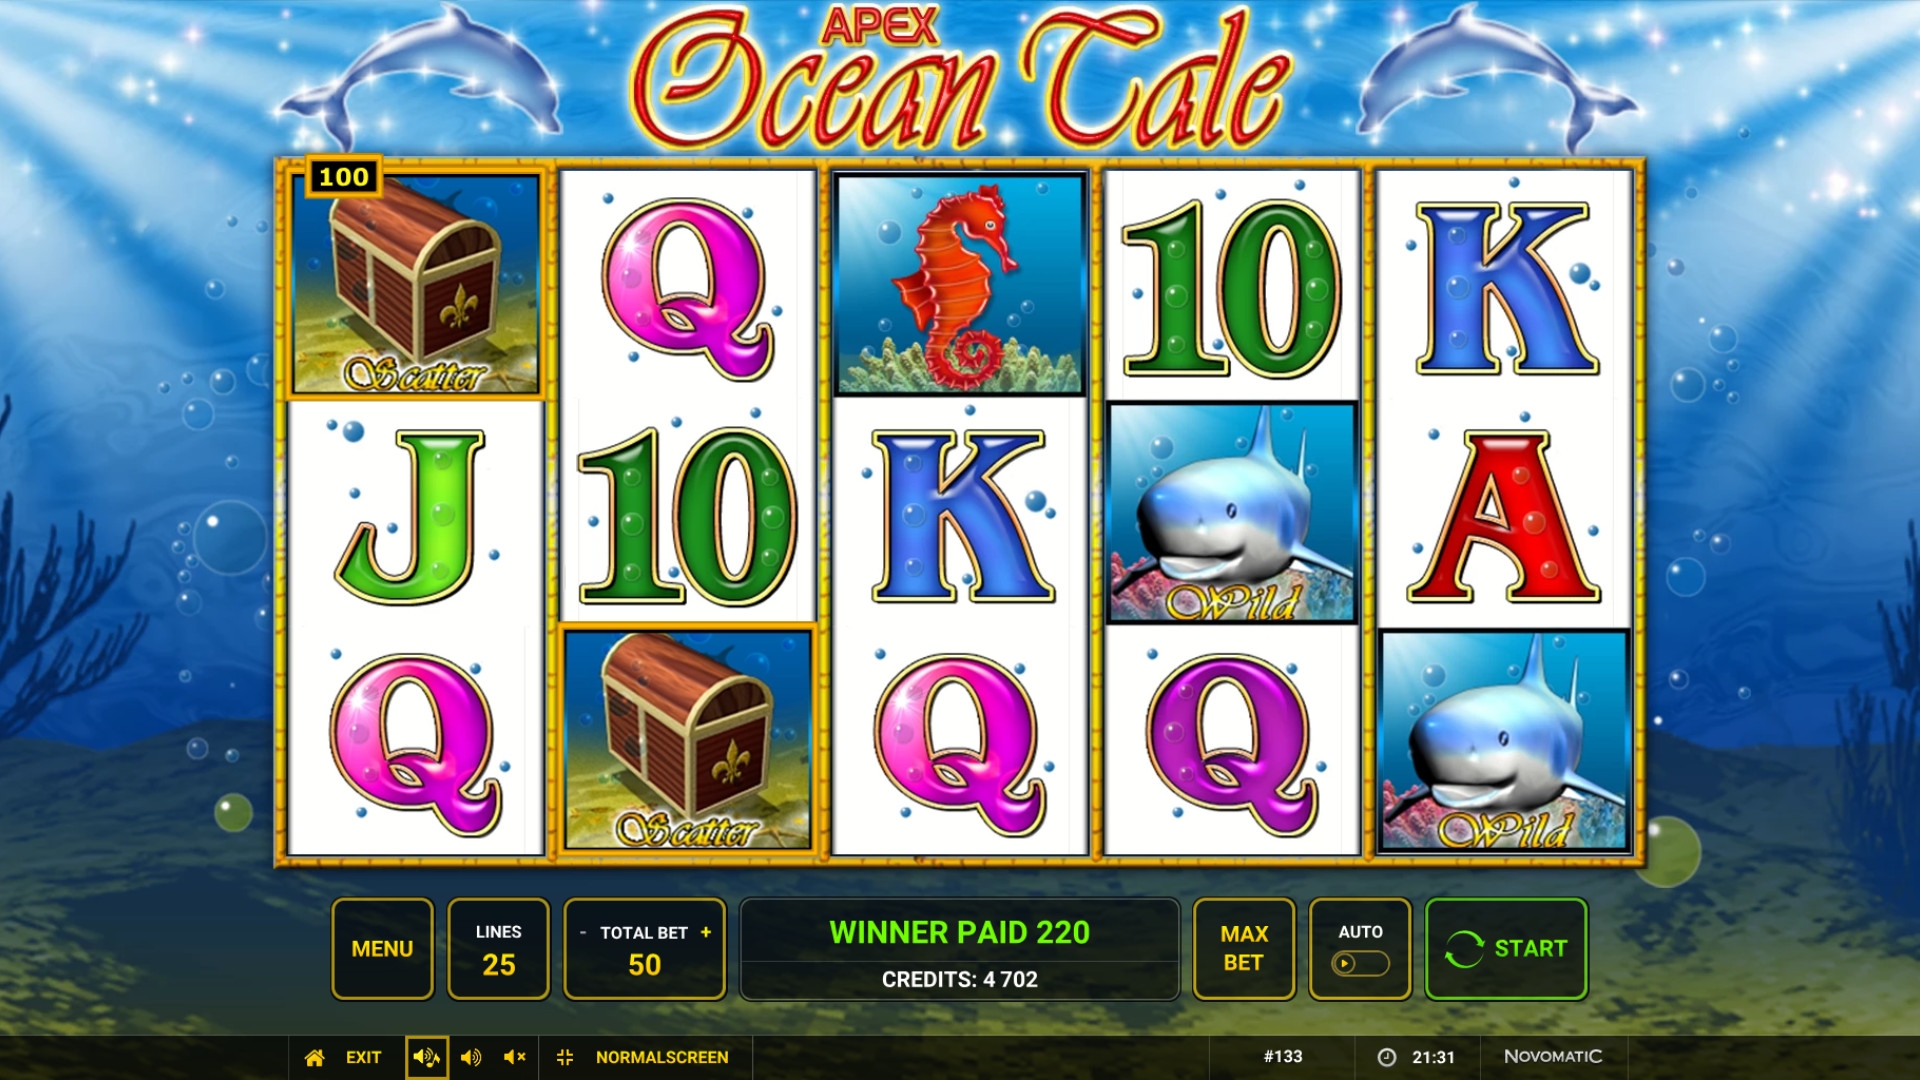 Ocean Tale (Ocean Tale) from category Slots